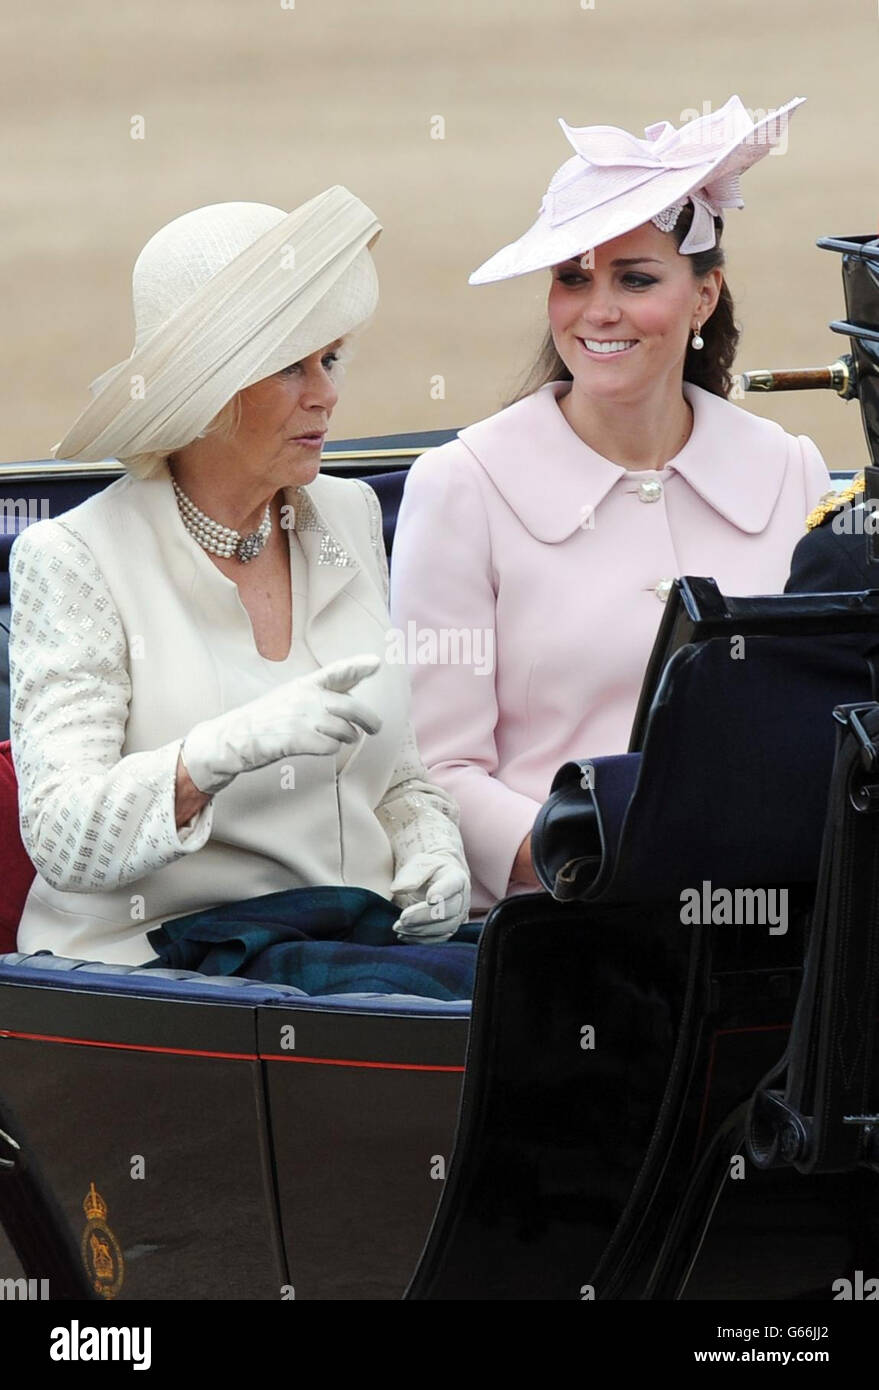 La duchesse de Cornwall et la duchesse de Cambridge arrivent à Horse Guards Parade, Londres, pour assister à Trooping the Color. Banque D'Images